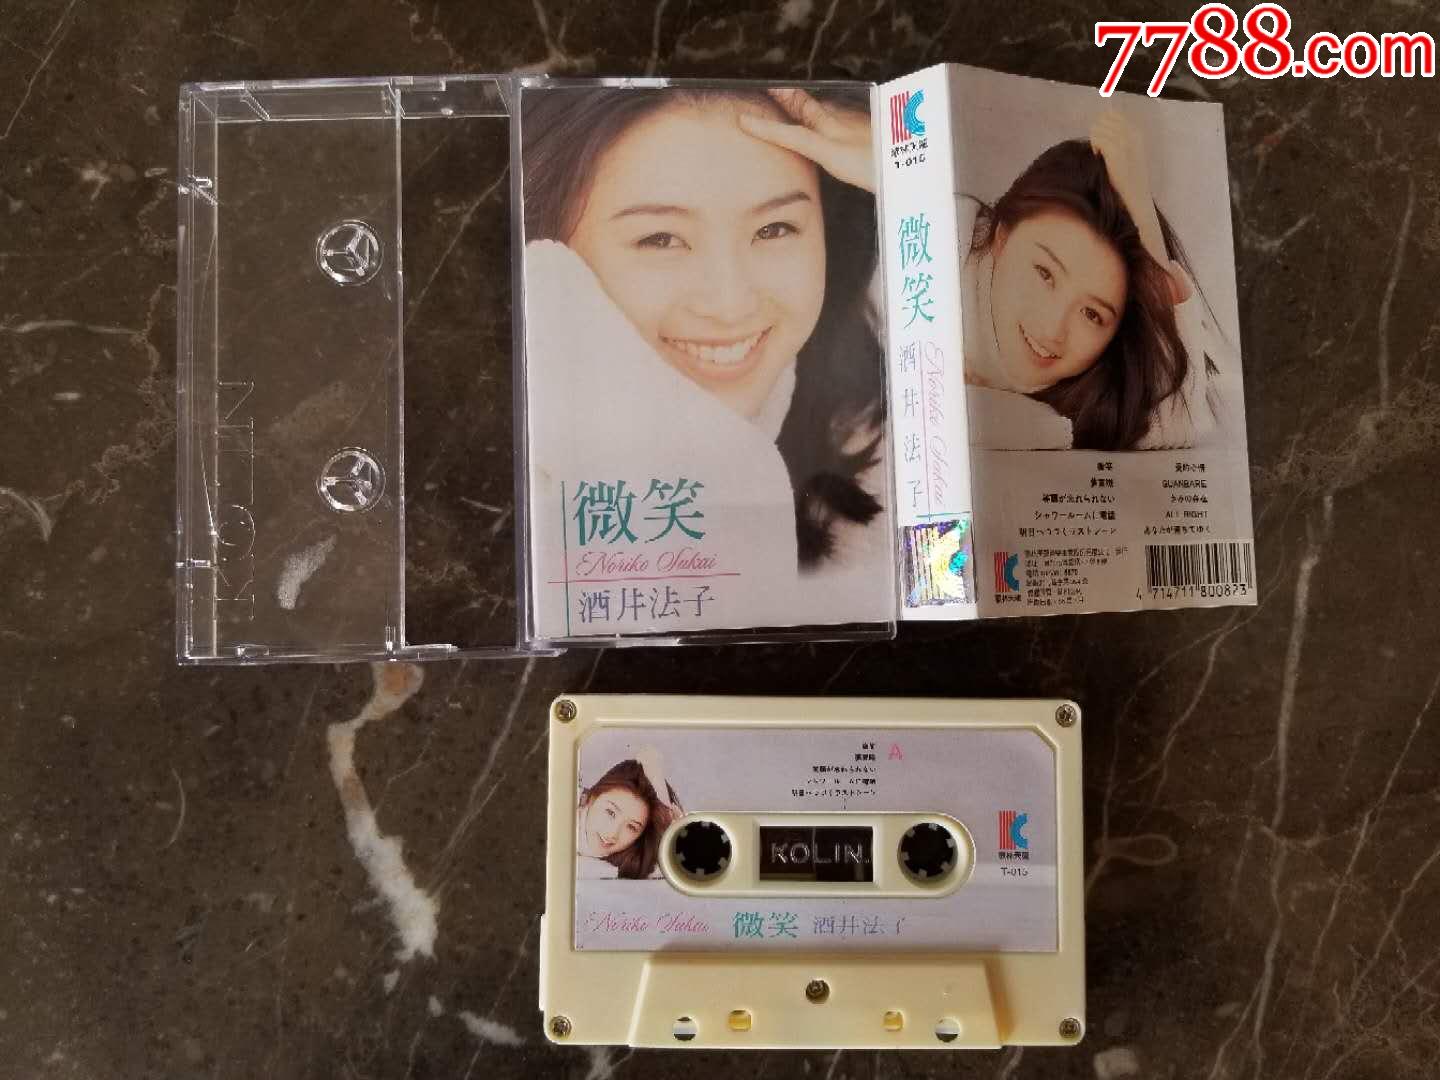 台湾歌林磁带酒井法子微笑专辑